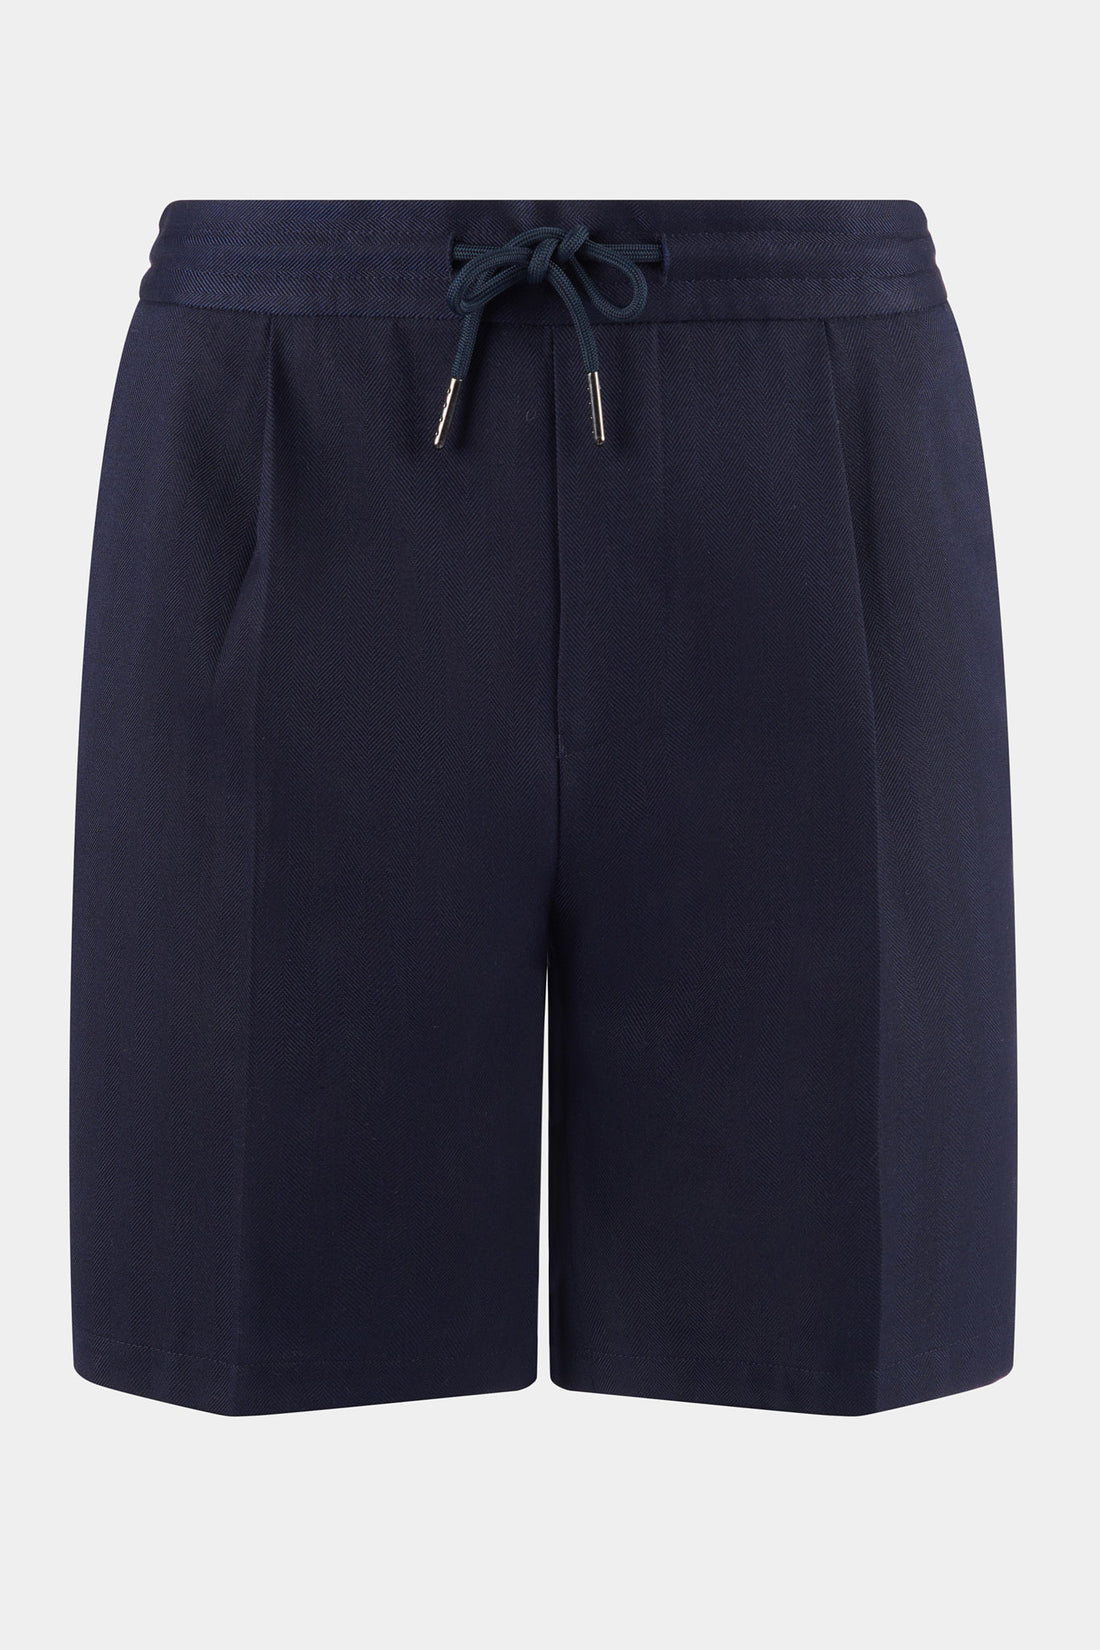 Peckham Rye Herringbone Drawstring Shorts in Dark Sapphire Navy